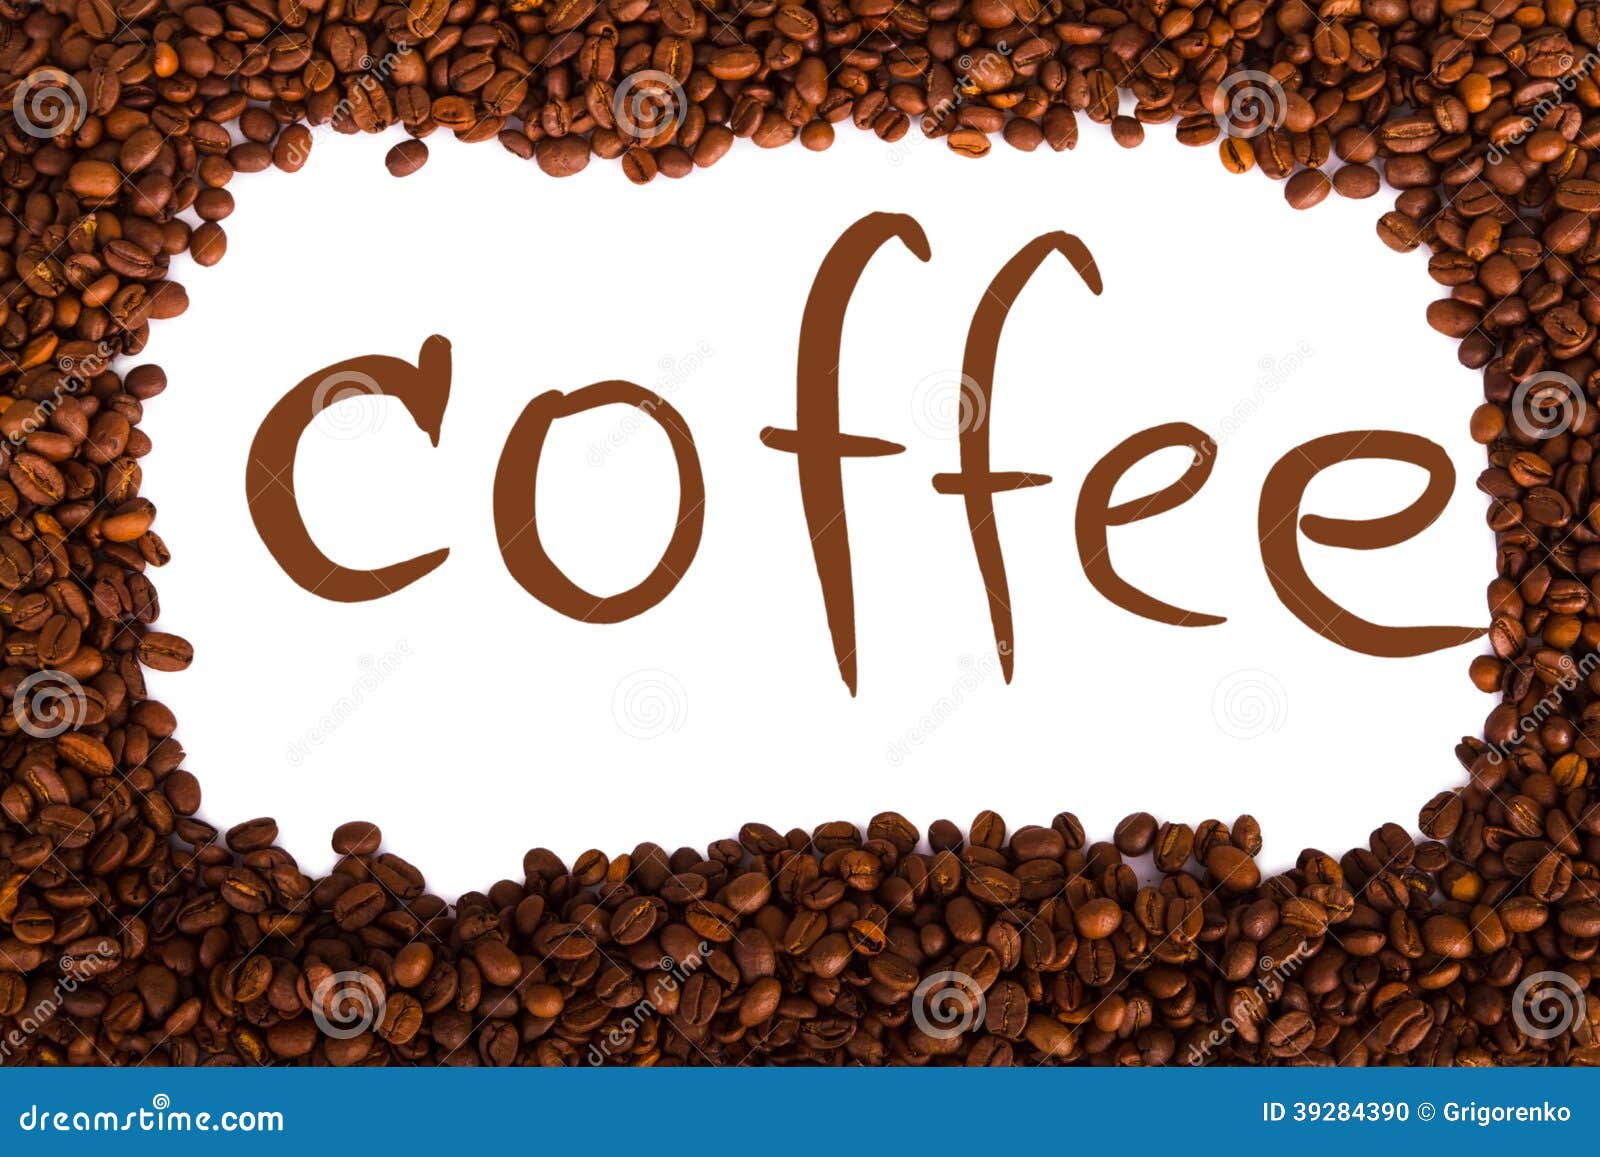 Словосочетание слова кофе. Слово кофе. Рамка из кофейных зерен рисунок. Слово кофе вырезанное из дерева. Слова в которых есть слово кофе.